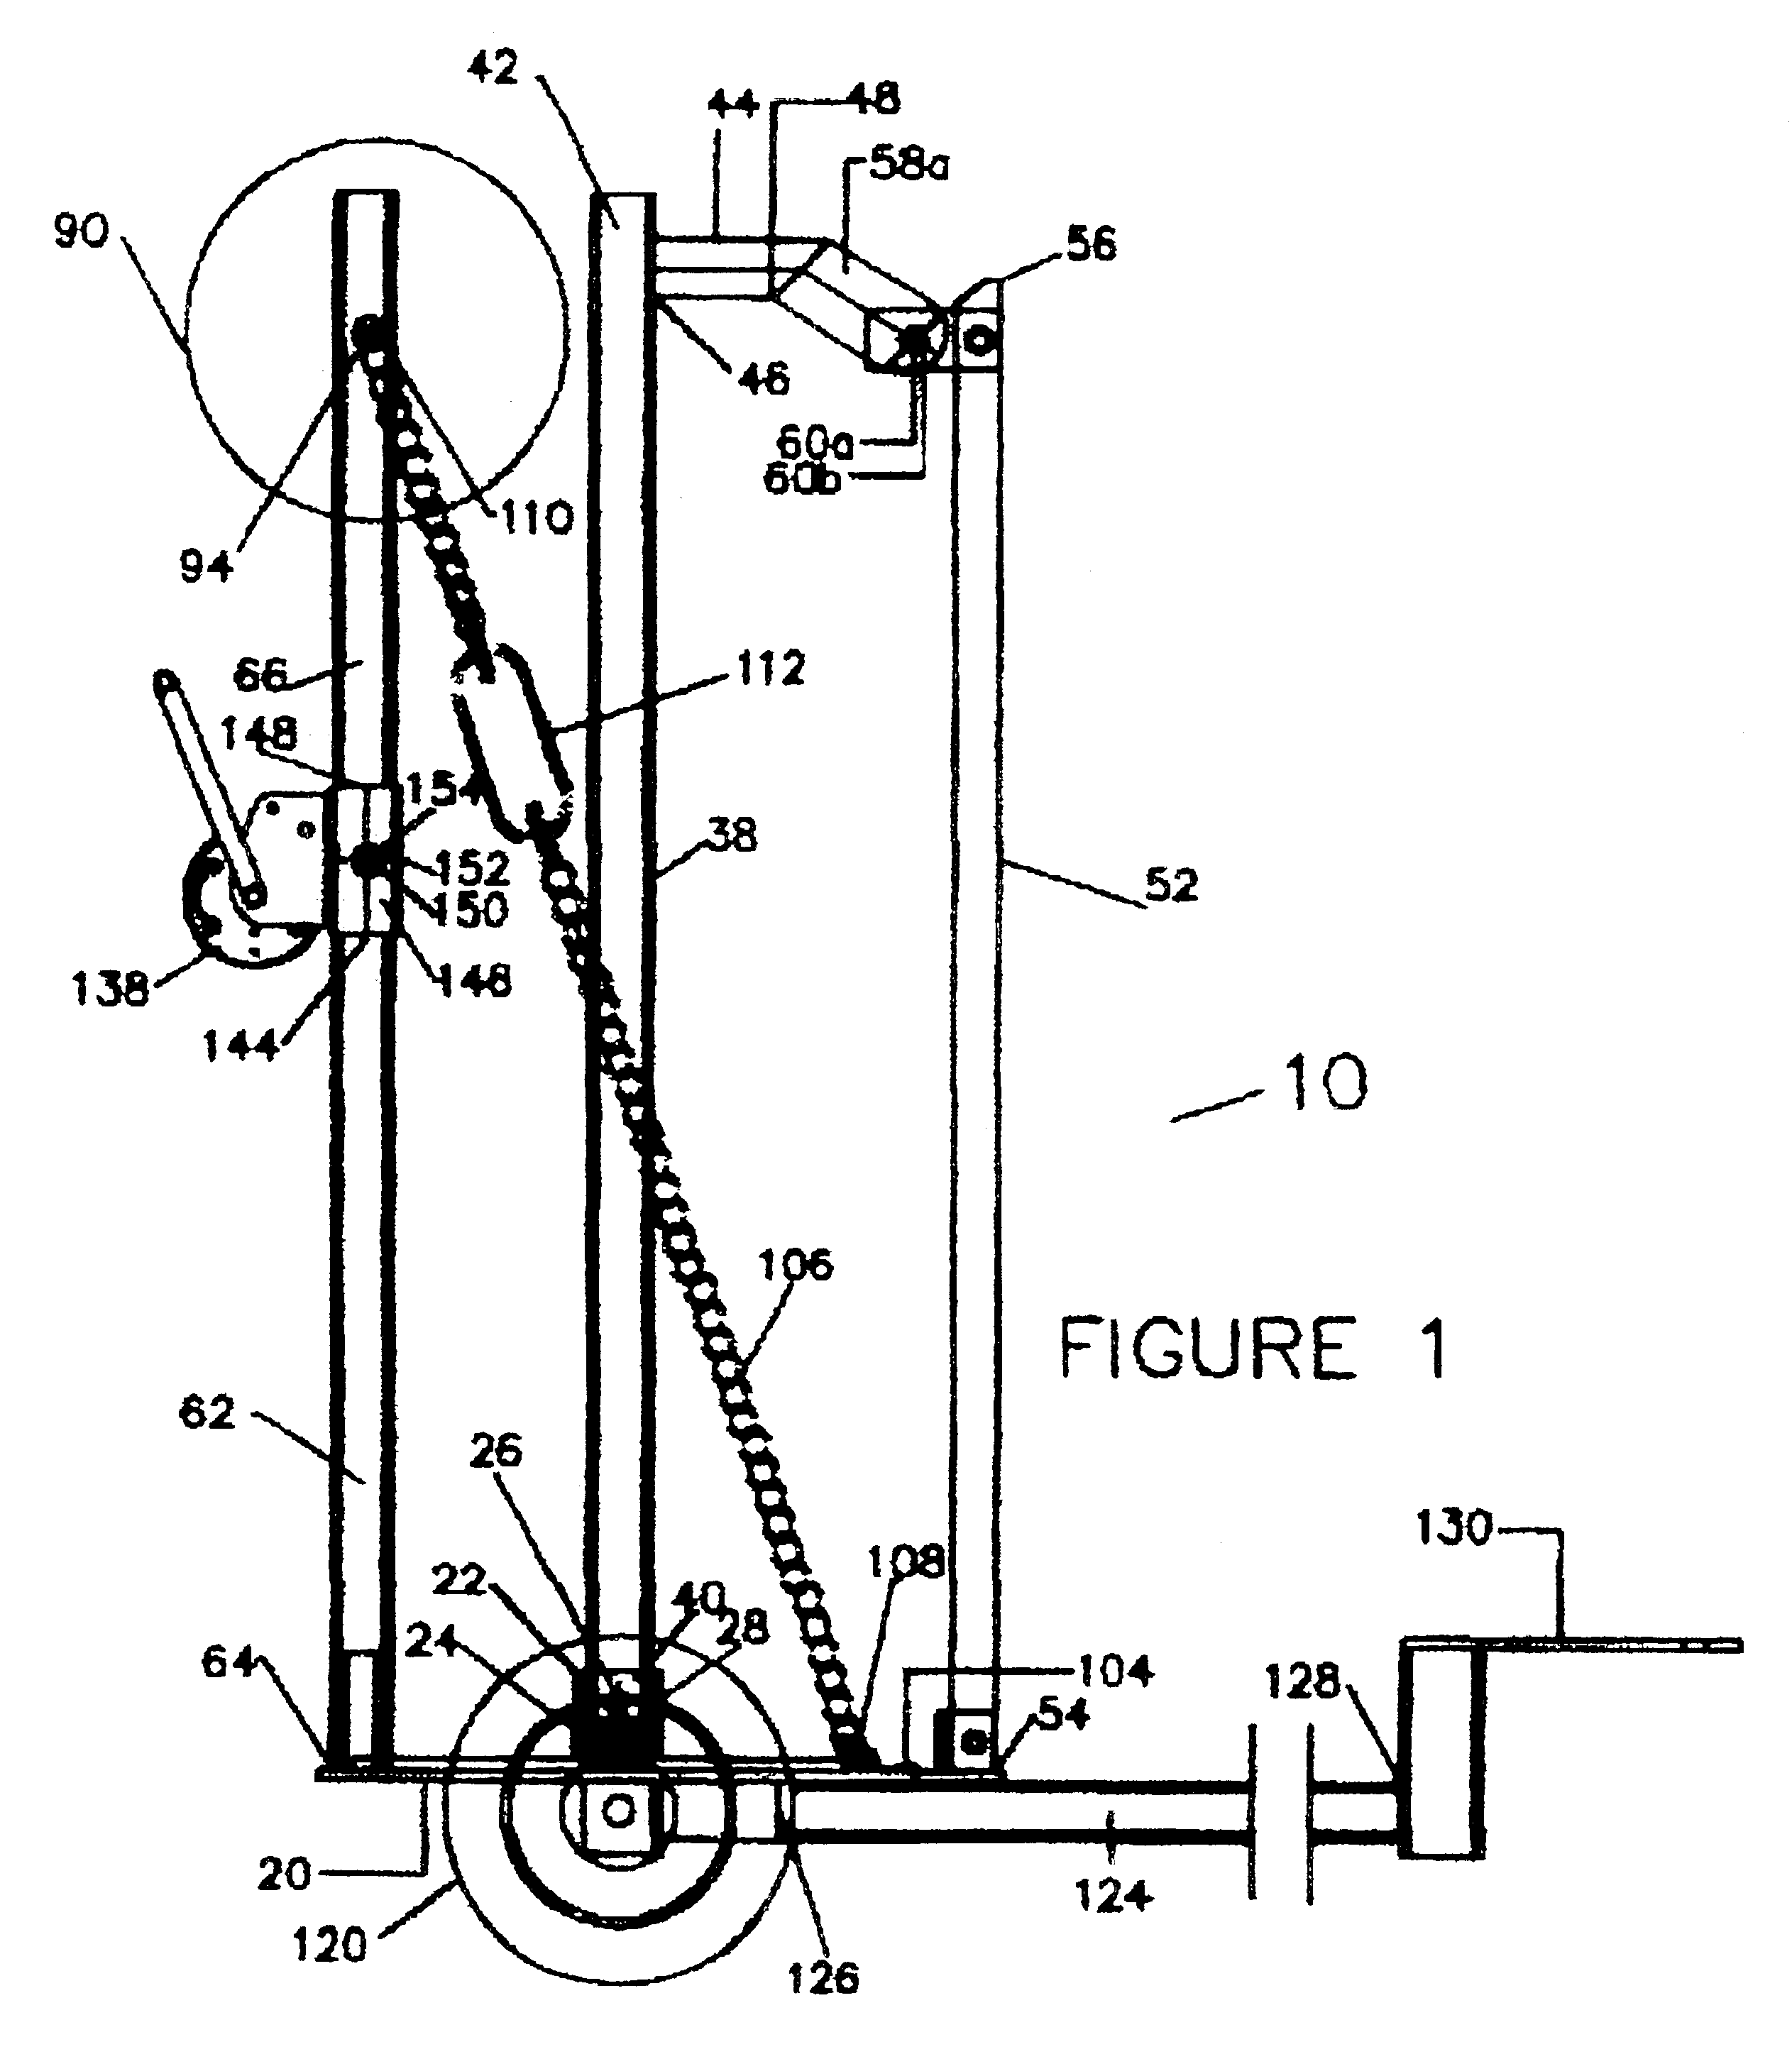 Fence dispensing apparatus